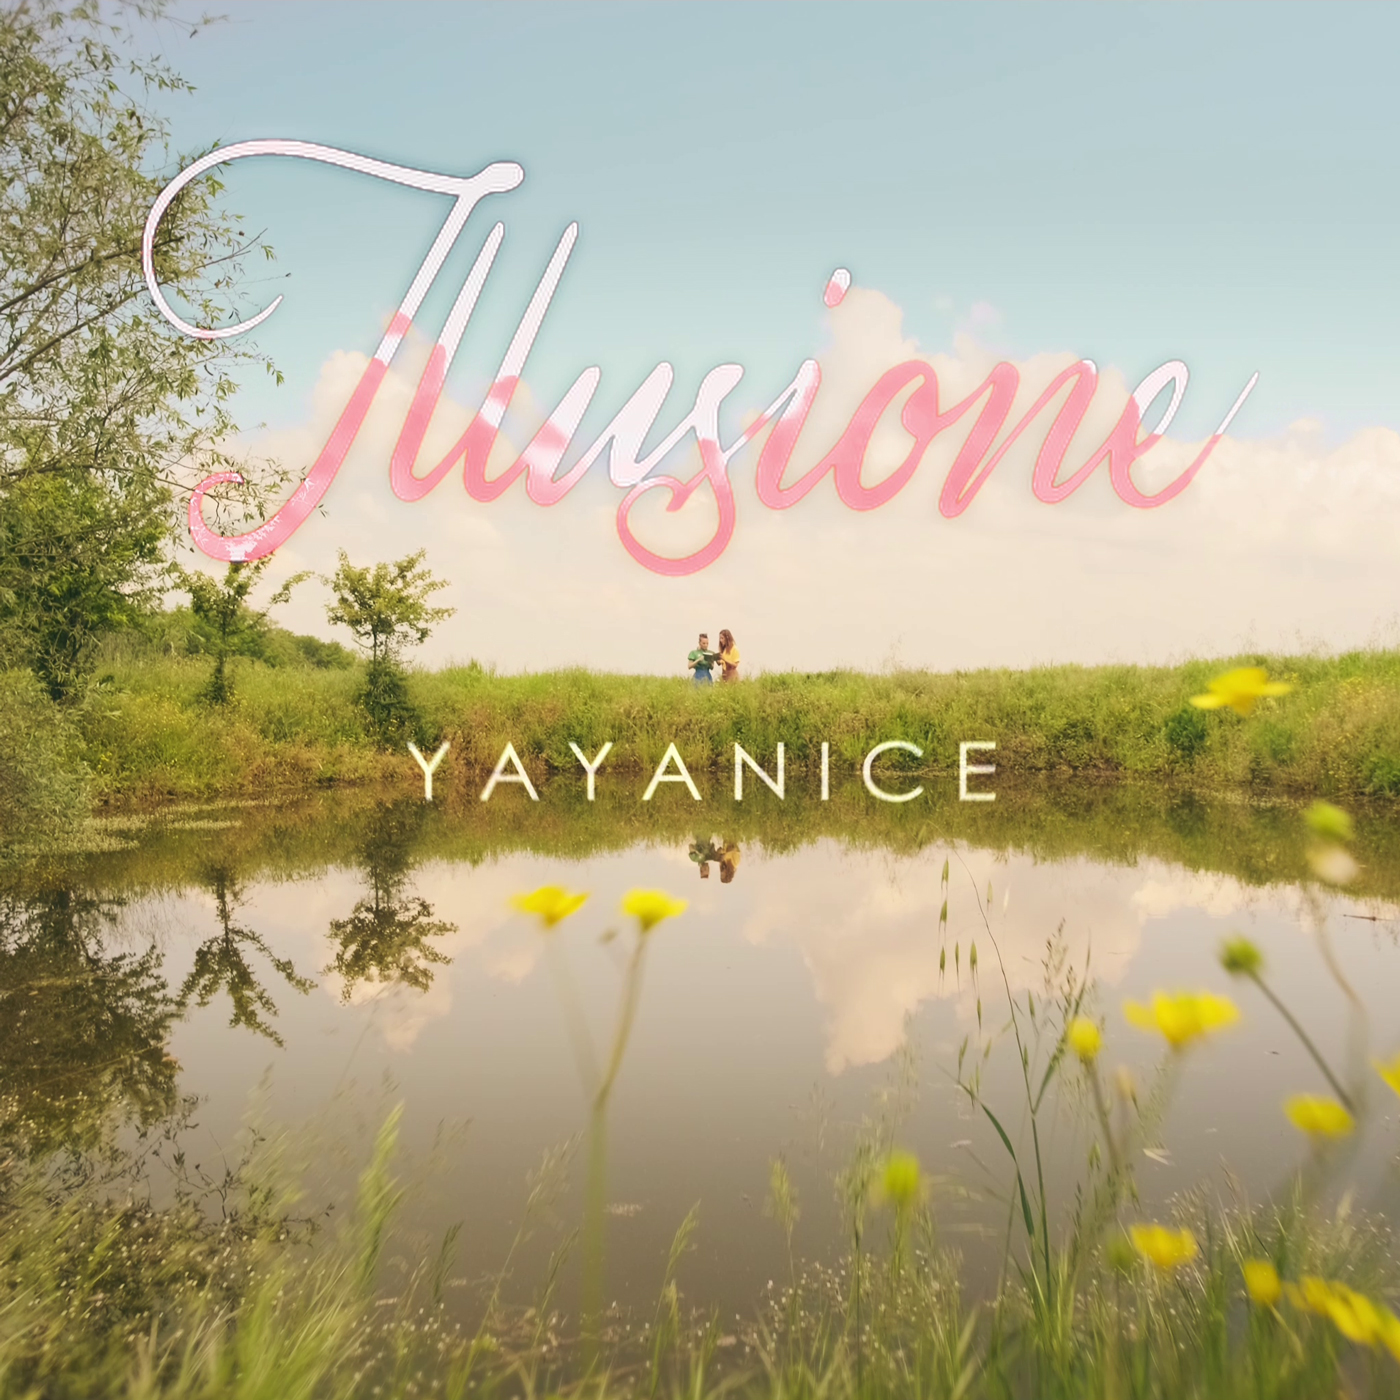 Dal 17 giugno disponibile in rotazione radiofonica “Illusione”, il nuovo singolo del duo Yayanice